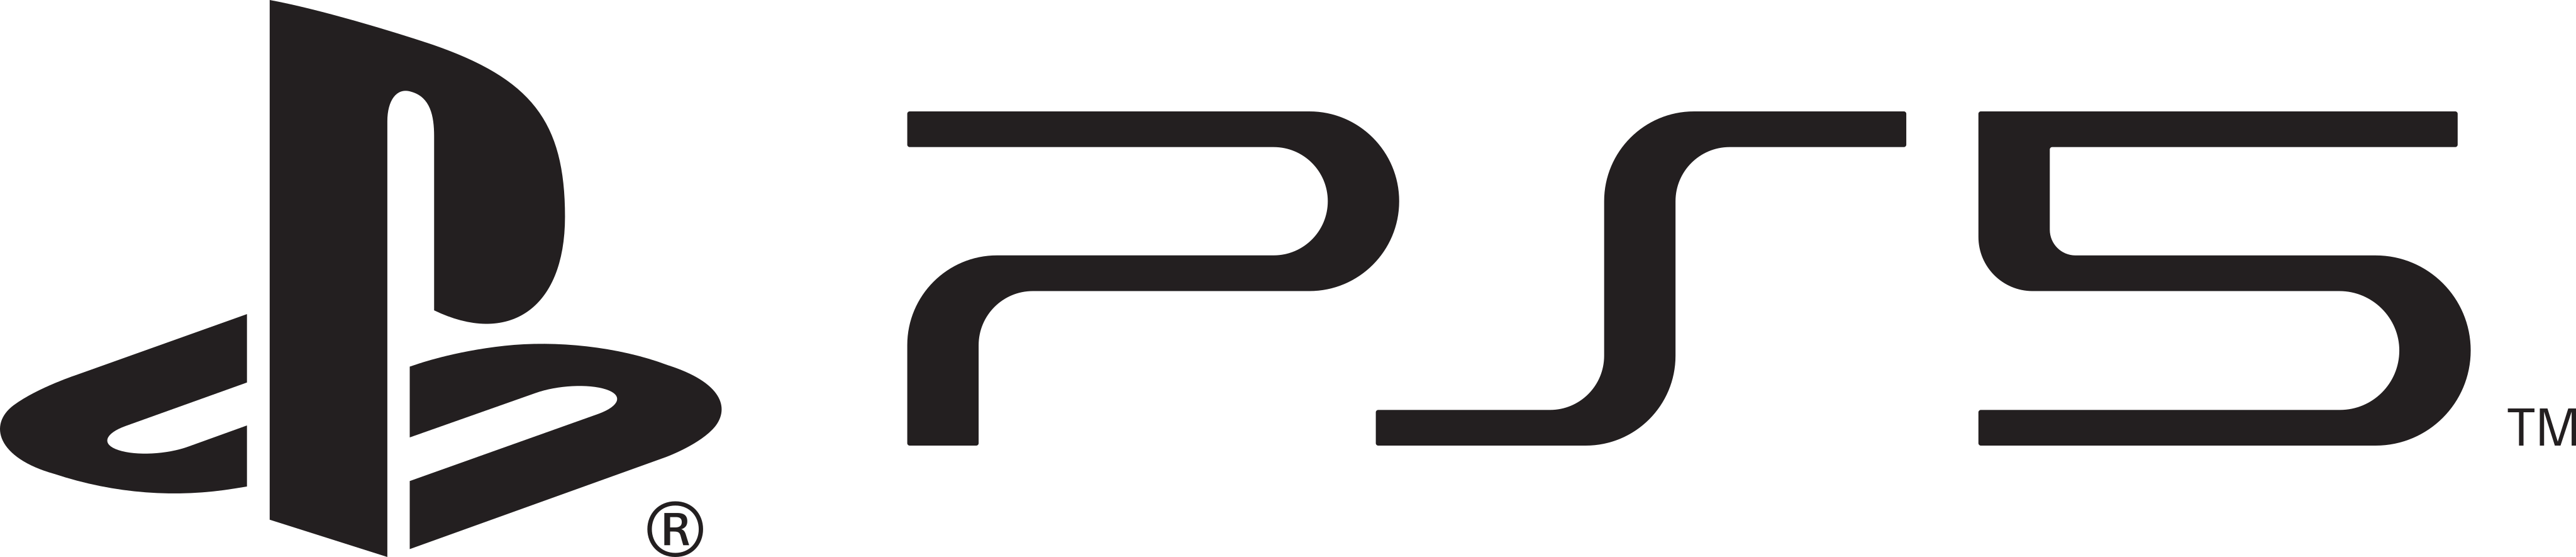 ps5 playstation 5 logo - PS5 Logo – PlayStation 5 Logo